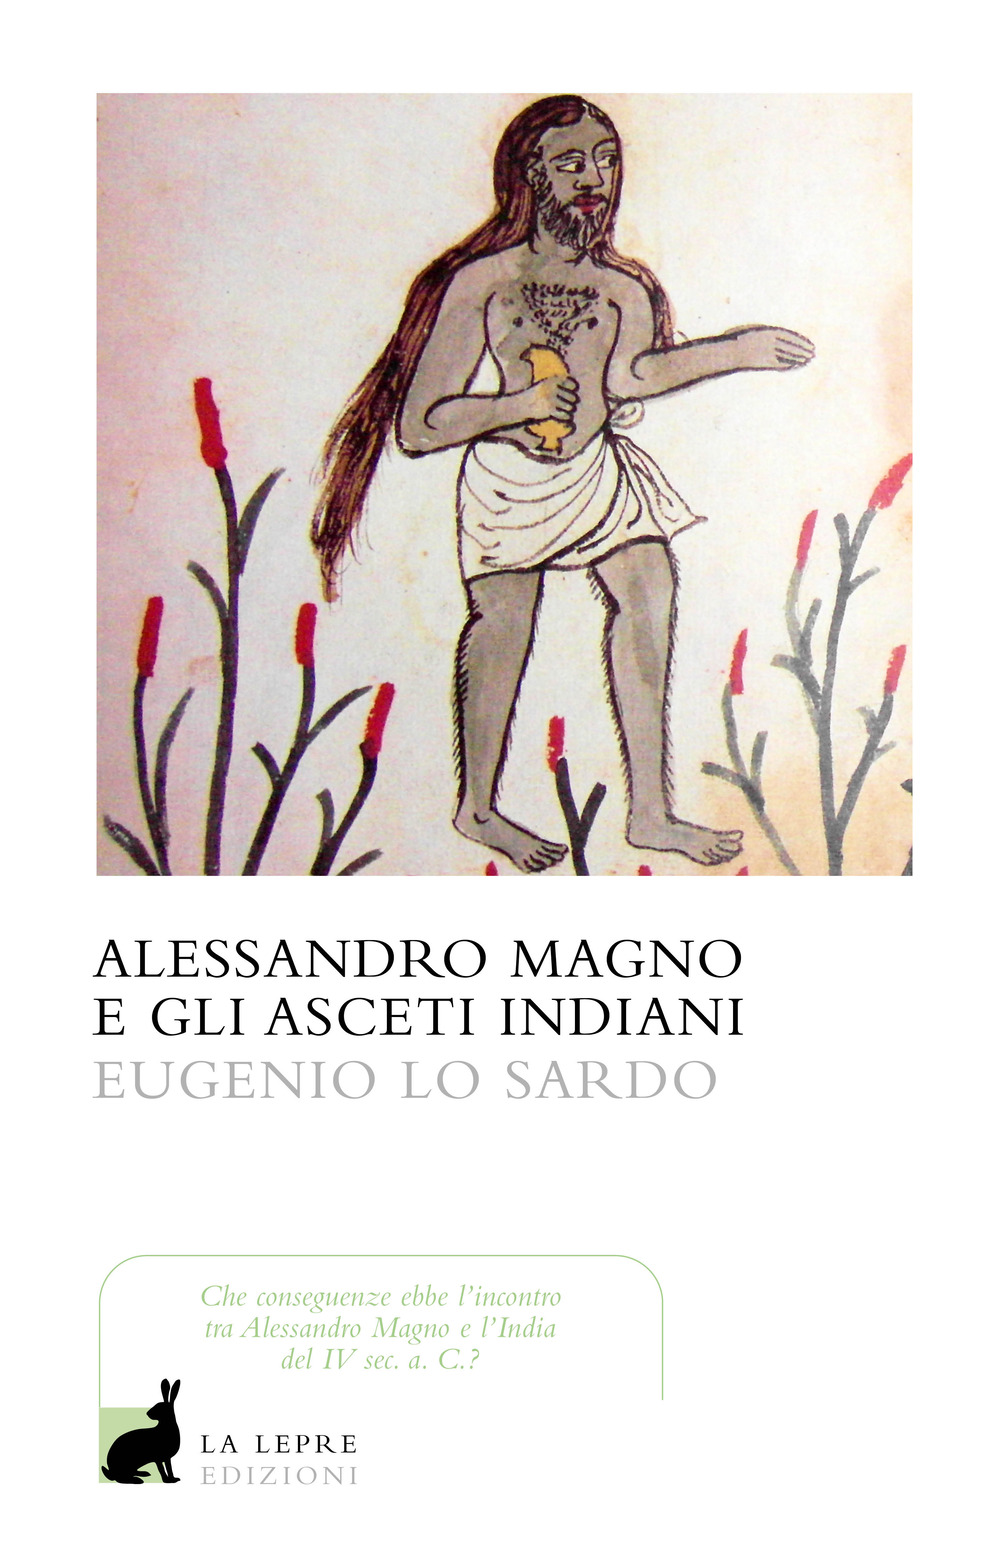 Alessandro Magno e gli asceti indiani